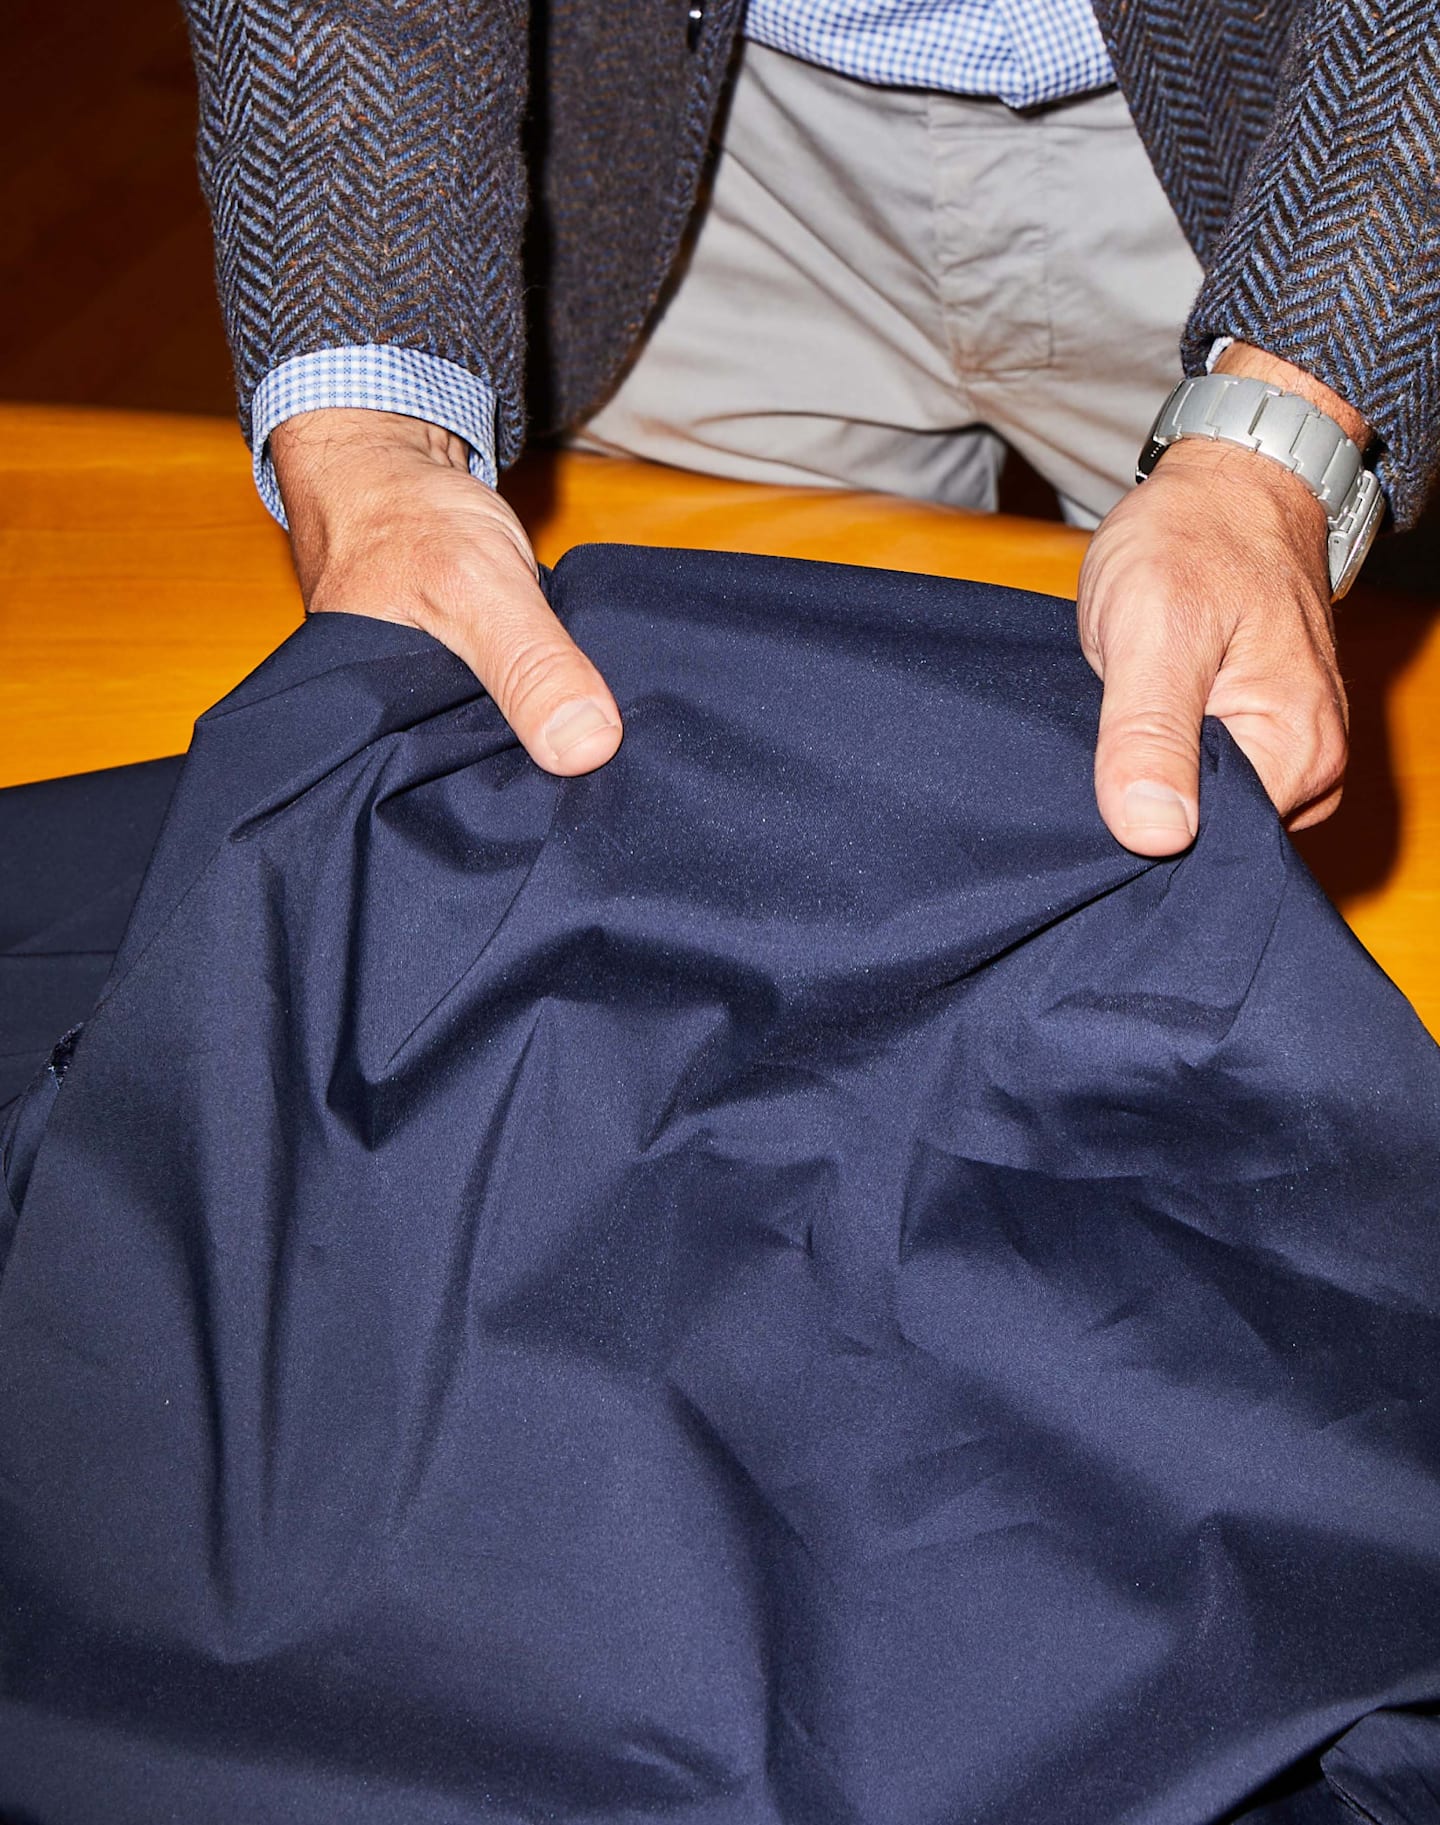 Los tejidos se inspeccionan a mano para comprobar su calidad y uniformidad.